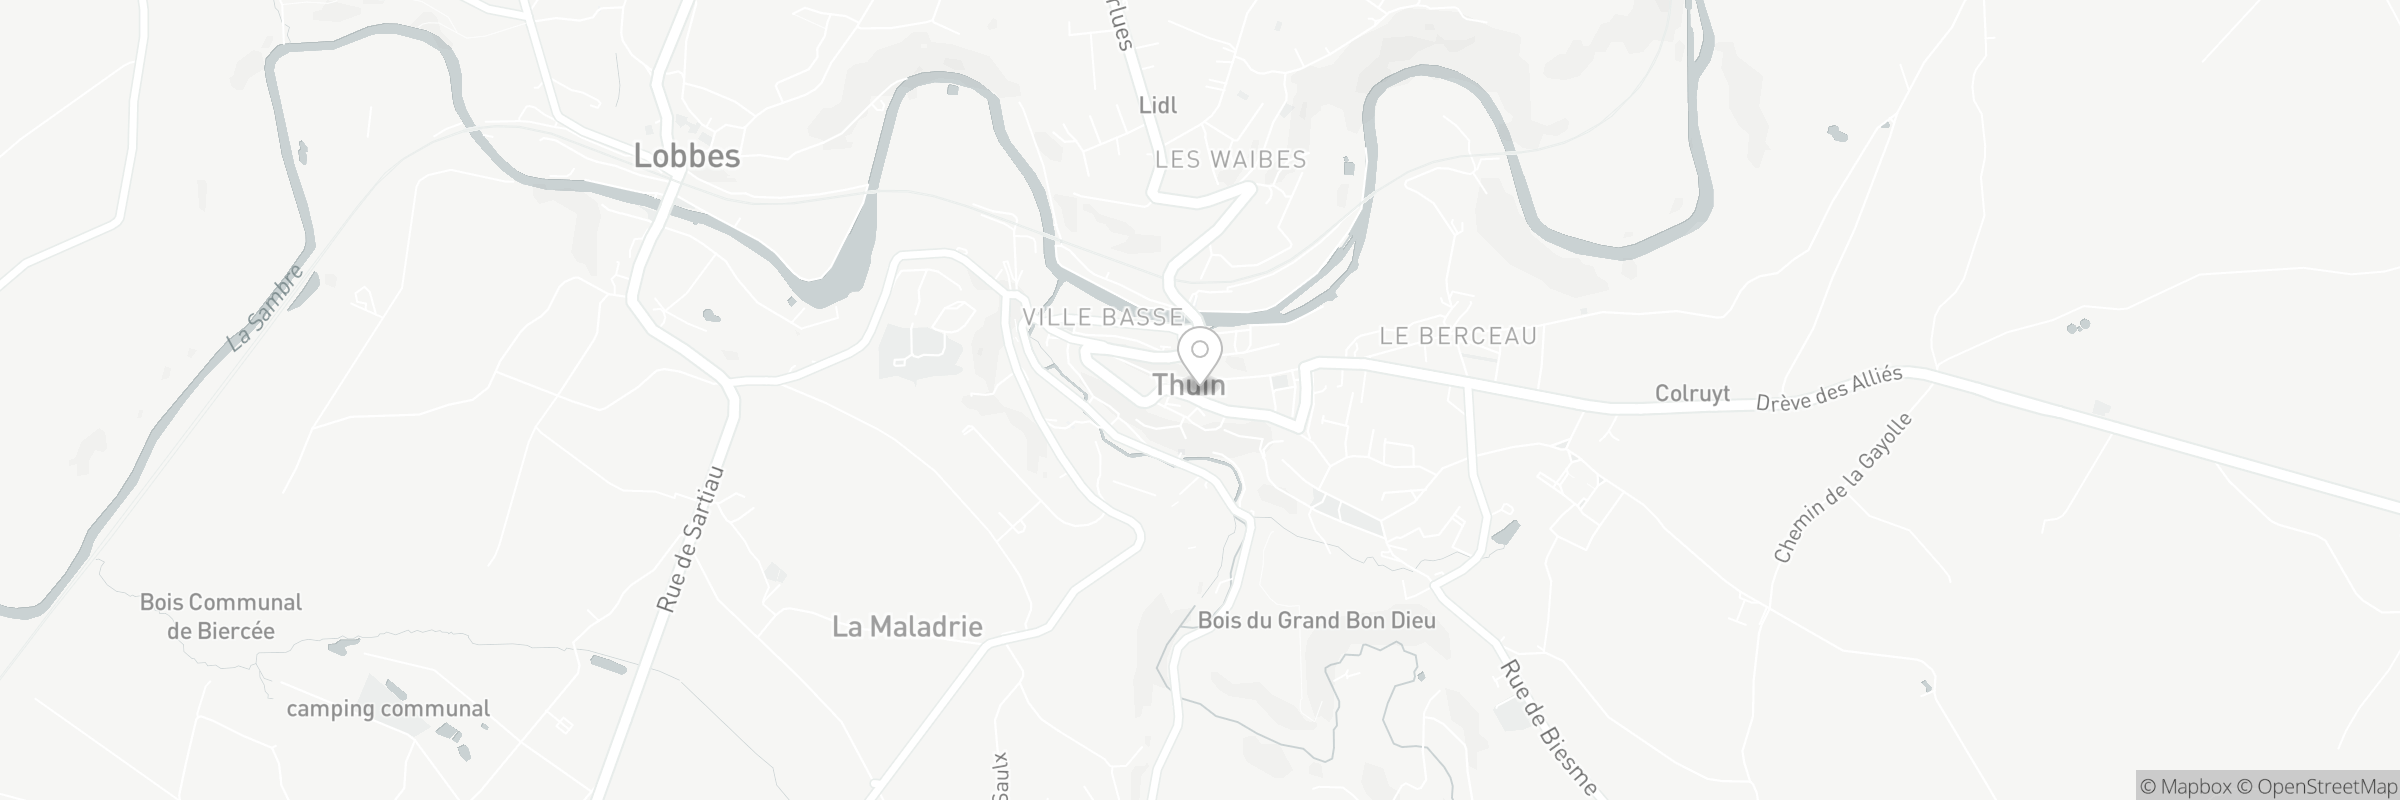 Kaart met het adres van Beffroi de Thuin